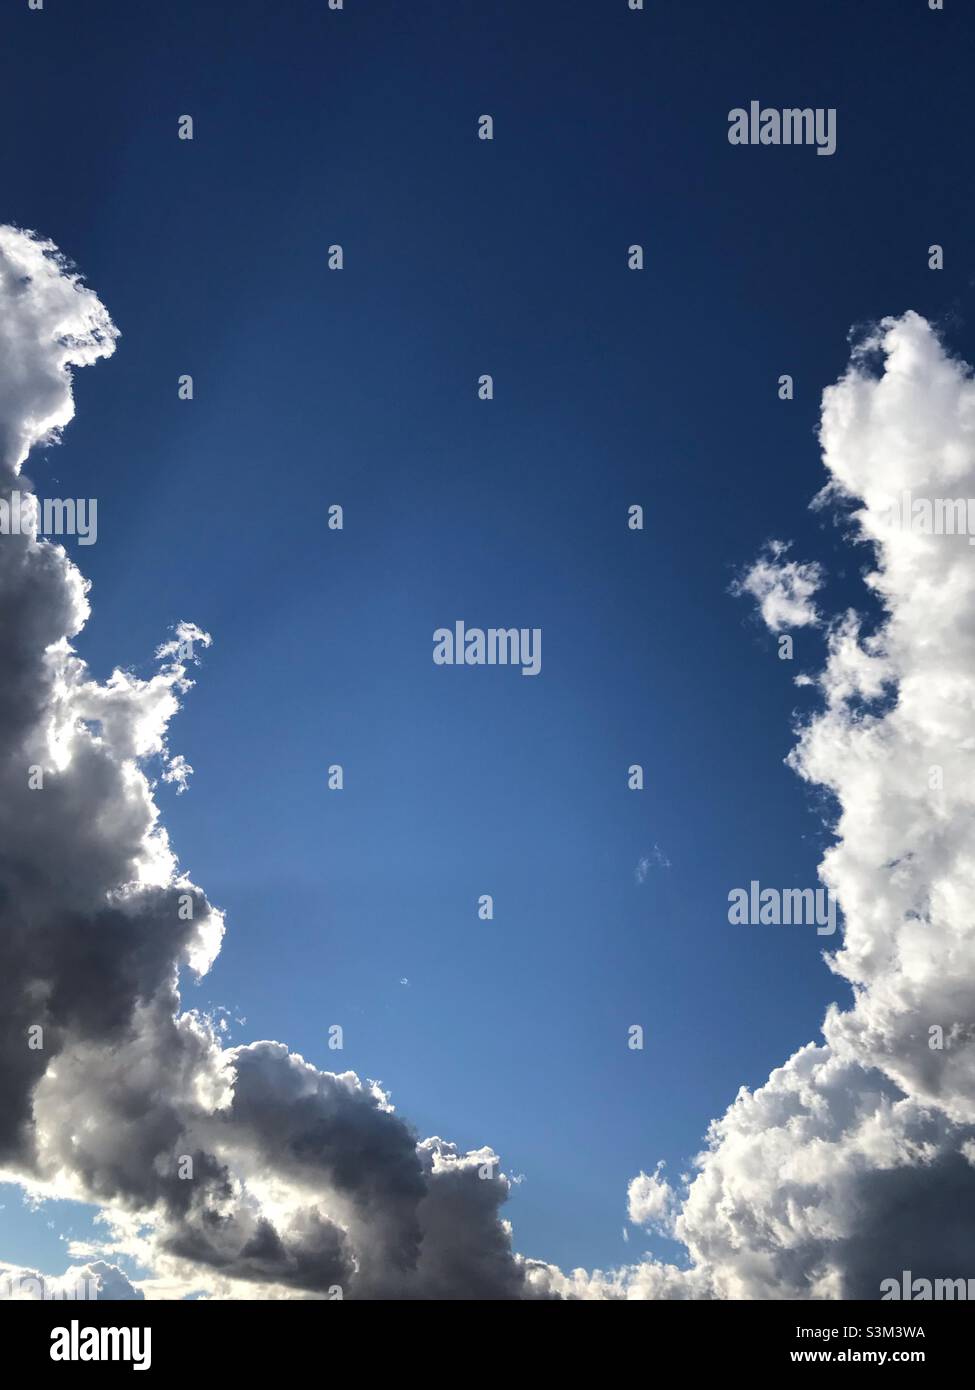 Nuvole che si uniscono con un cielo blu in attesa di una tempesta imminente Foto Stock